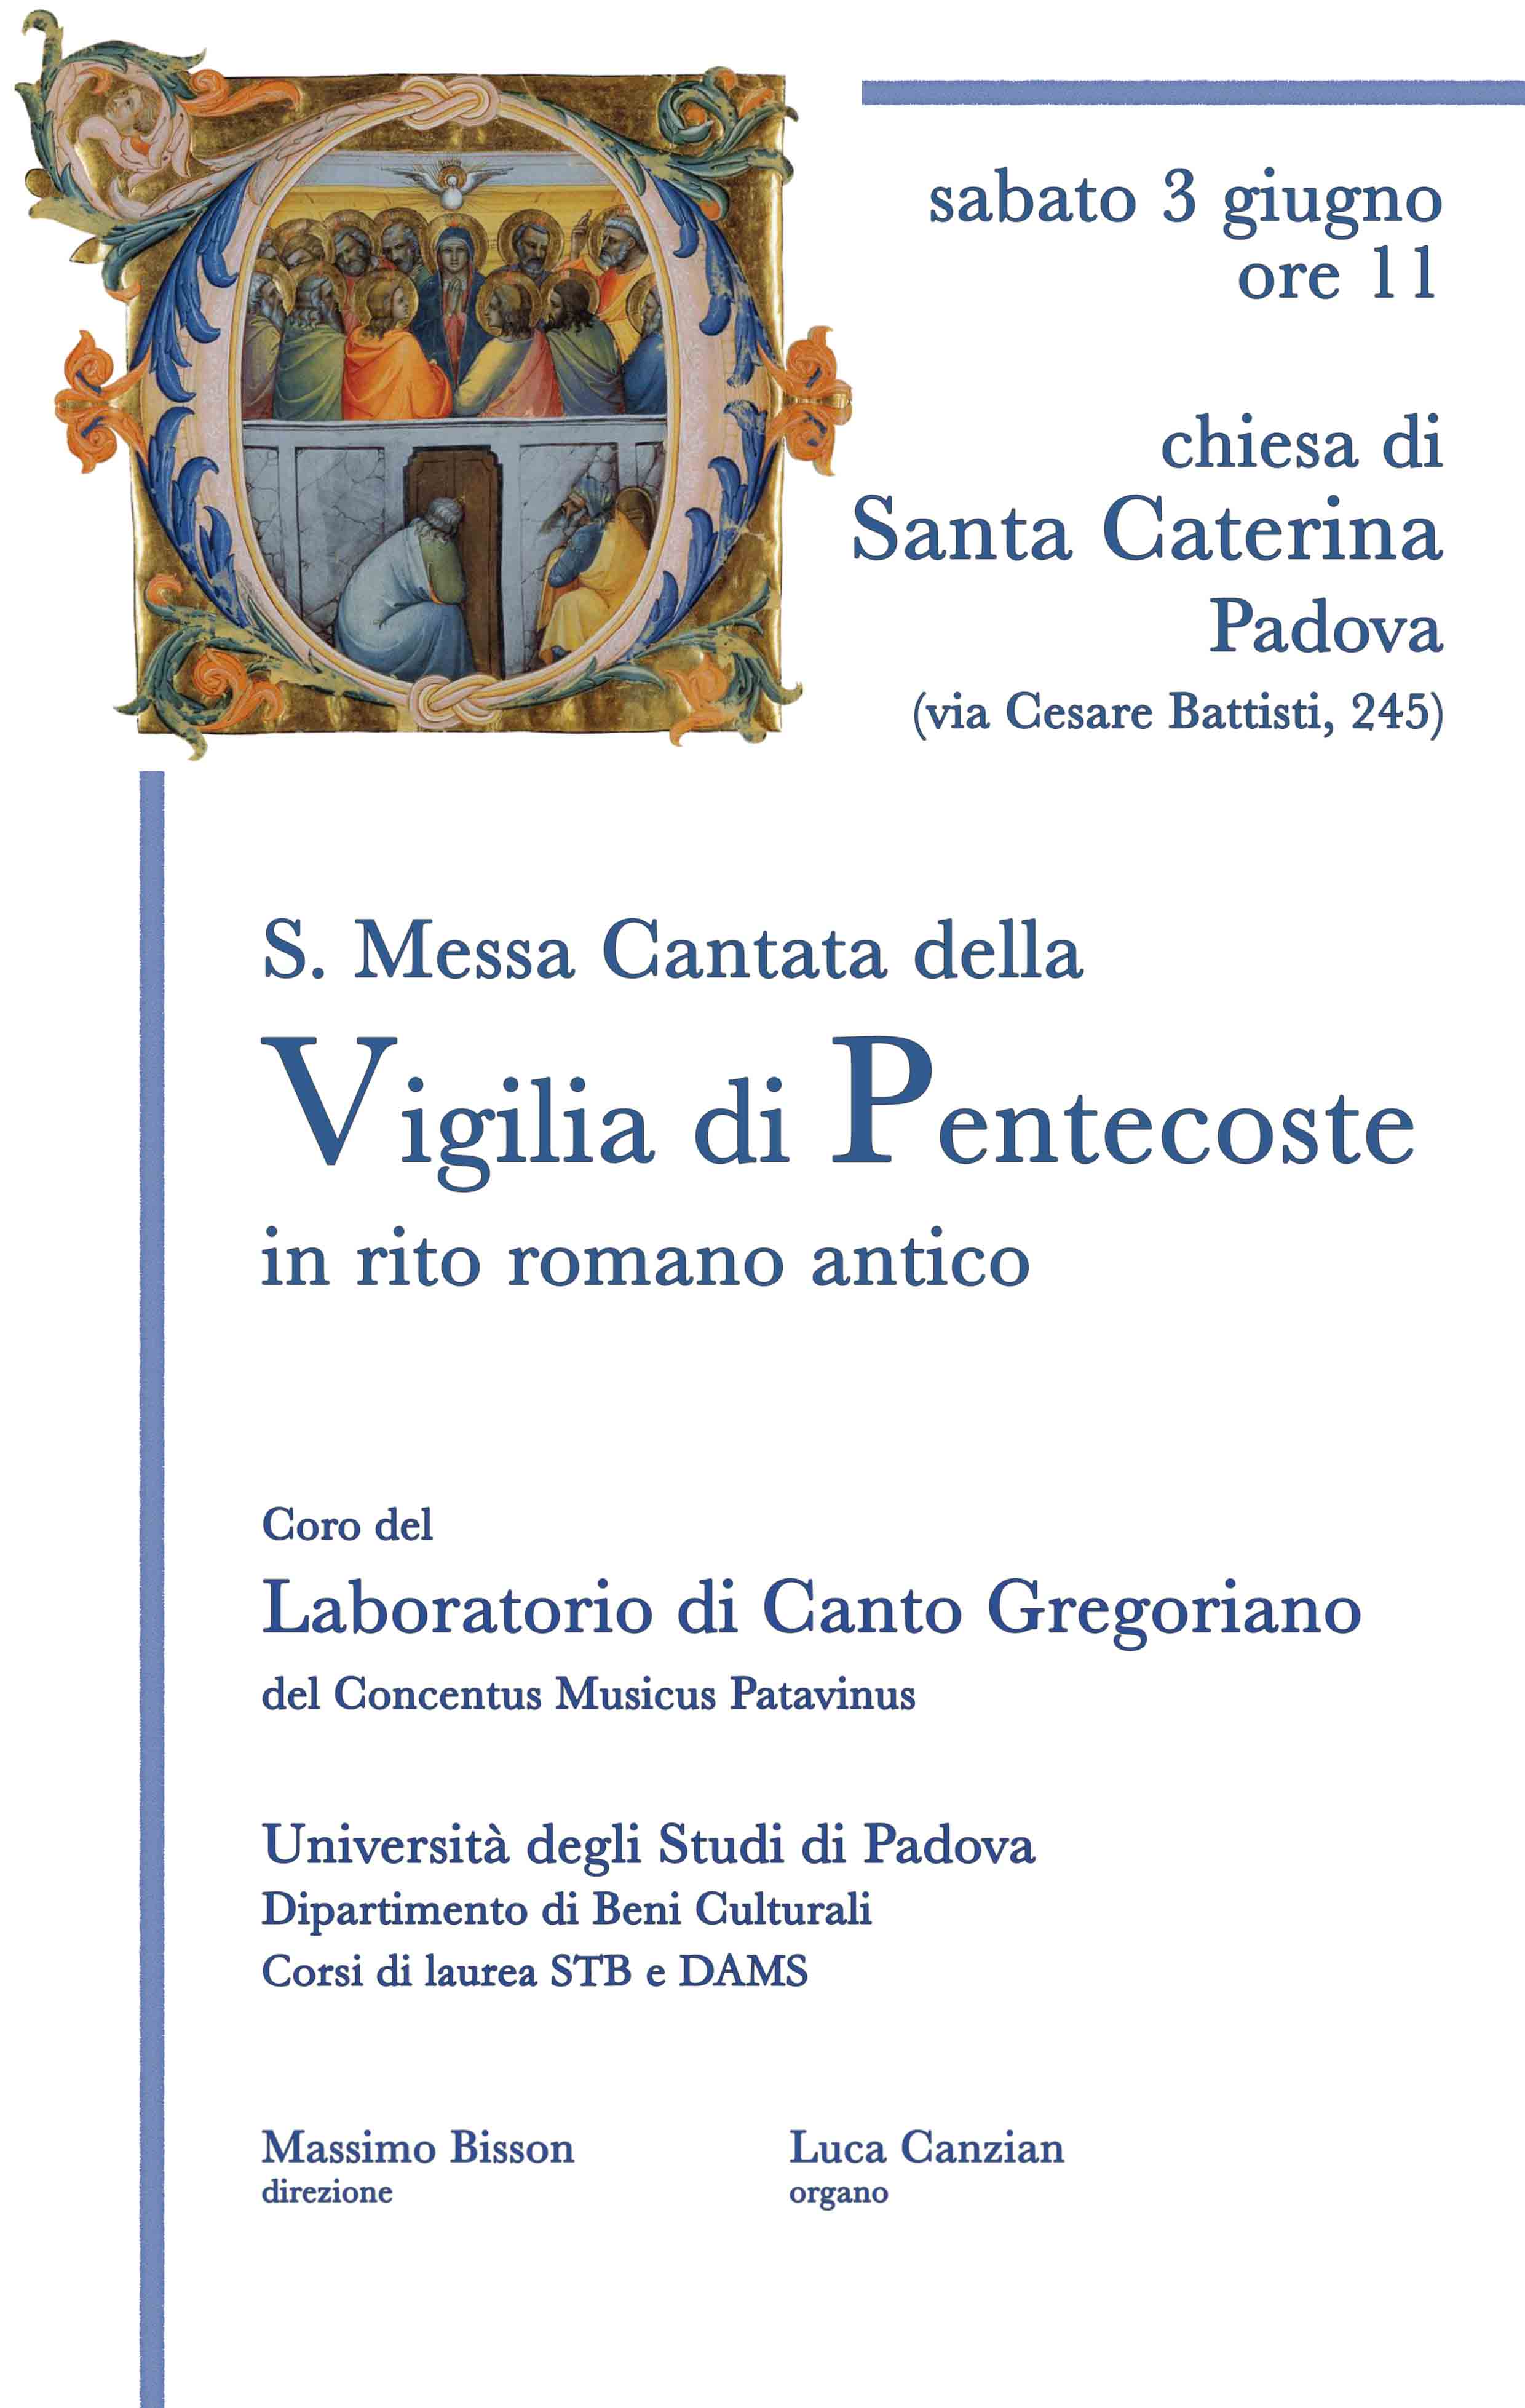 Padova, 3 giugno 2017 messa cantata alla chiesa di S. Caterina